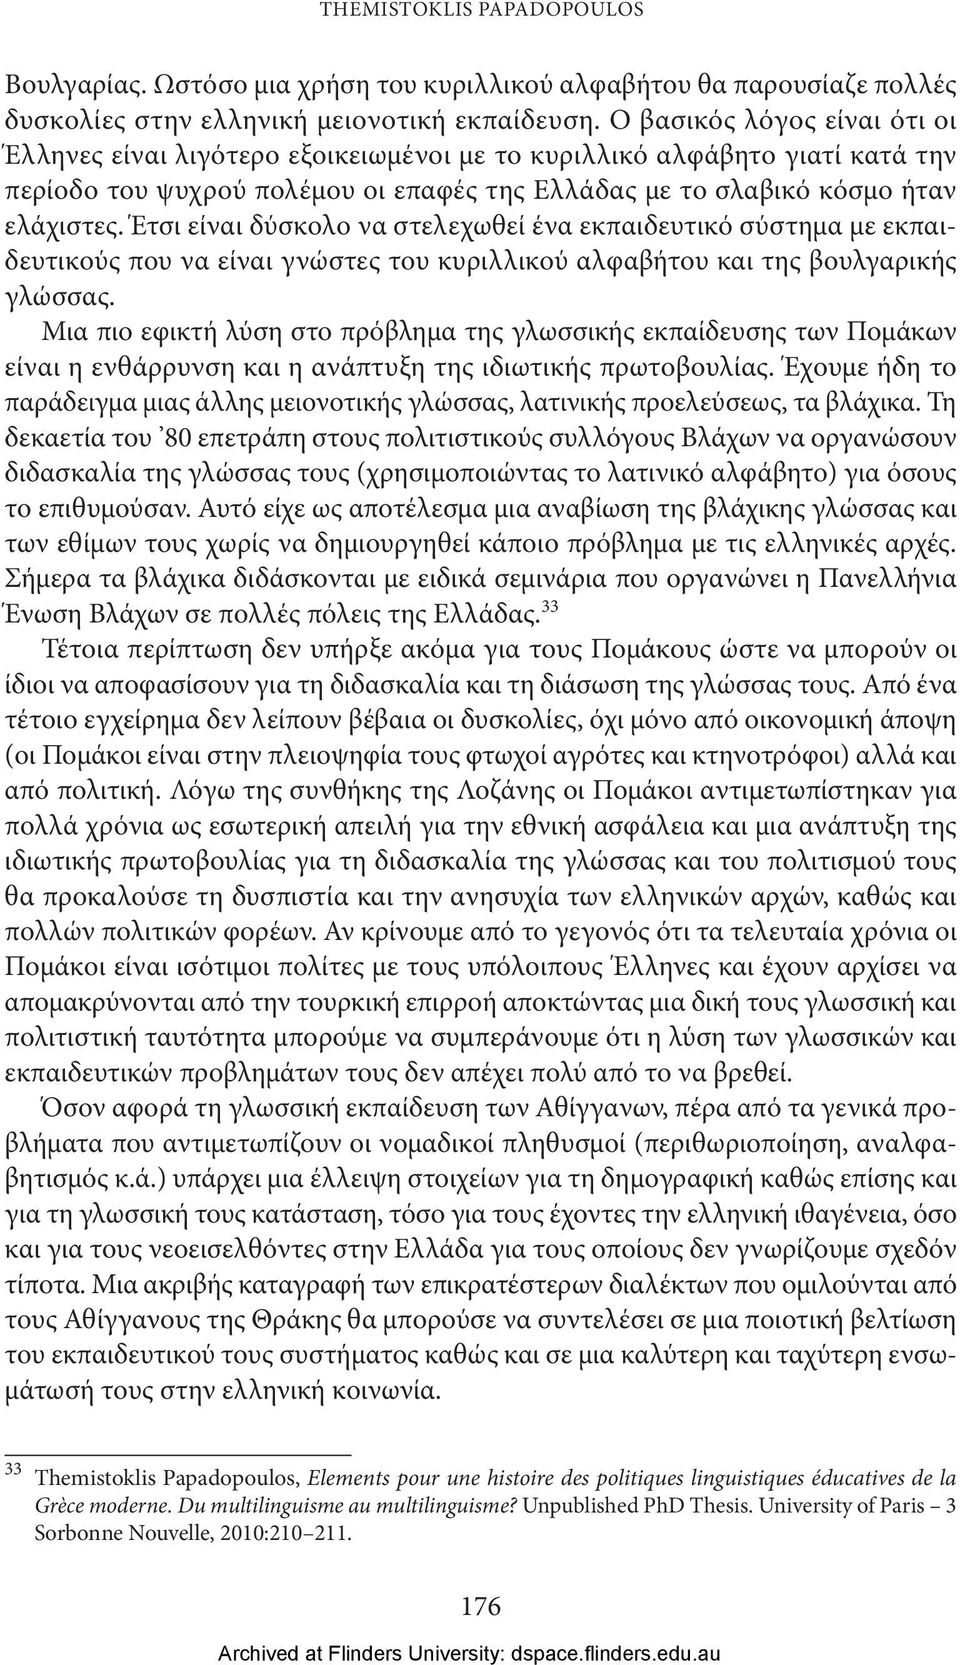 Έτσι είναι δύσκολο να στελεχωθεί ένα εκπαιδευτικό σύστημα με εκπαιδευτικούς που να είναι γνώστες του κυριλλικού αλφαβήτου και της βουλγαρικής γλώσσας.